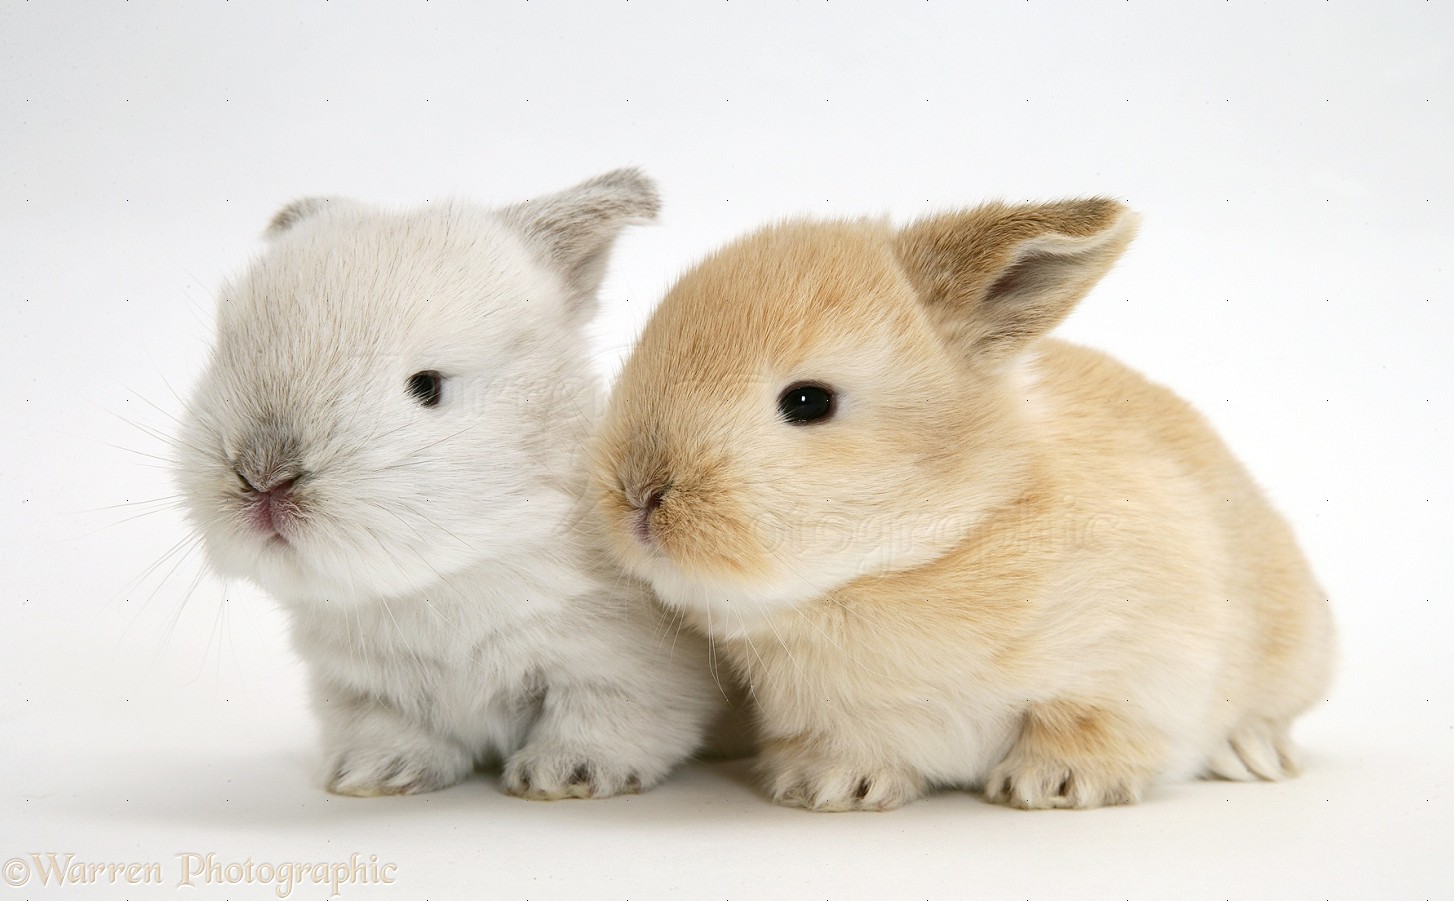 Baby Lop rabbits photo WP20550